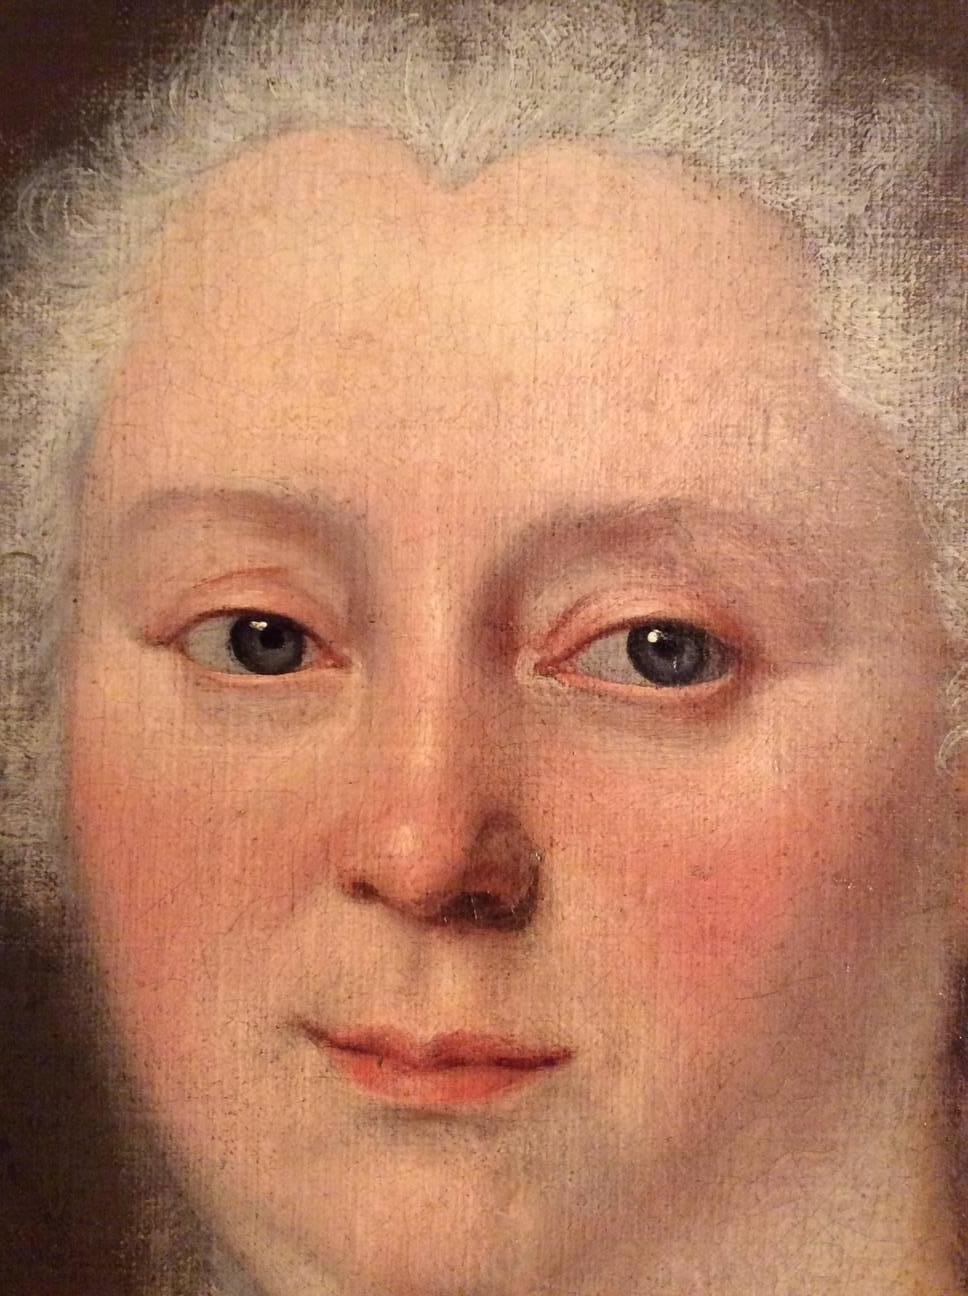 18th century princess